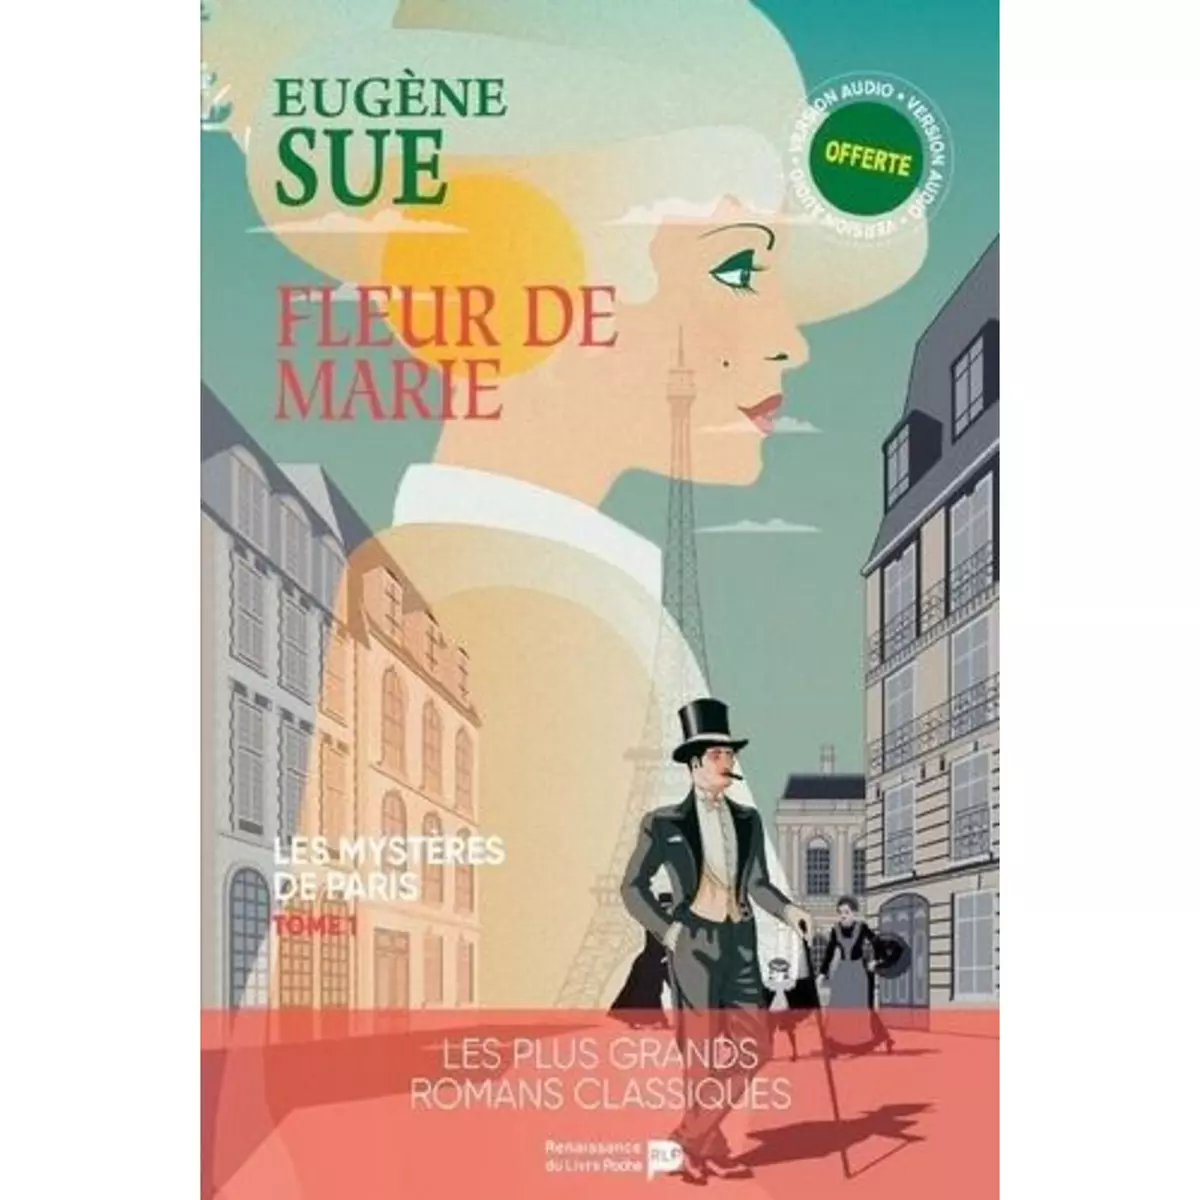  LES MYSTERES DE PARIS TOME 1 : LES FLEURS DE MARIE, Sue Eugène